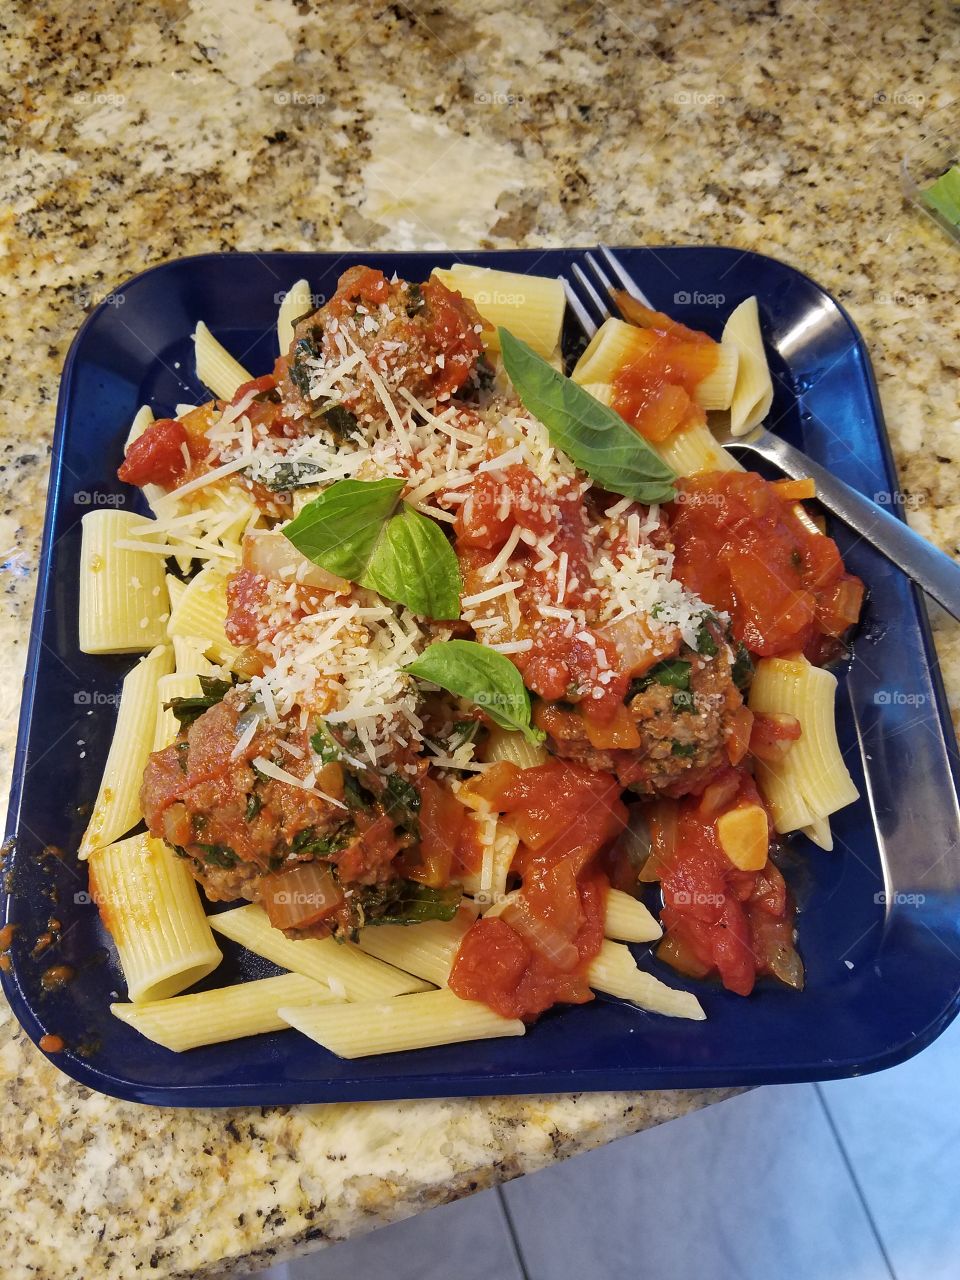 Italian dinner